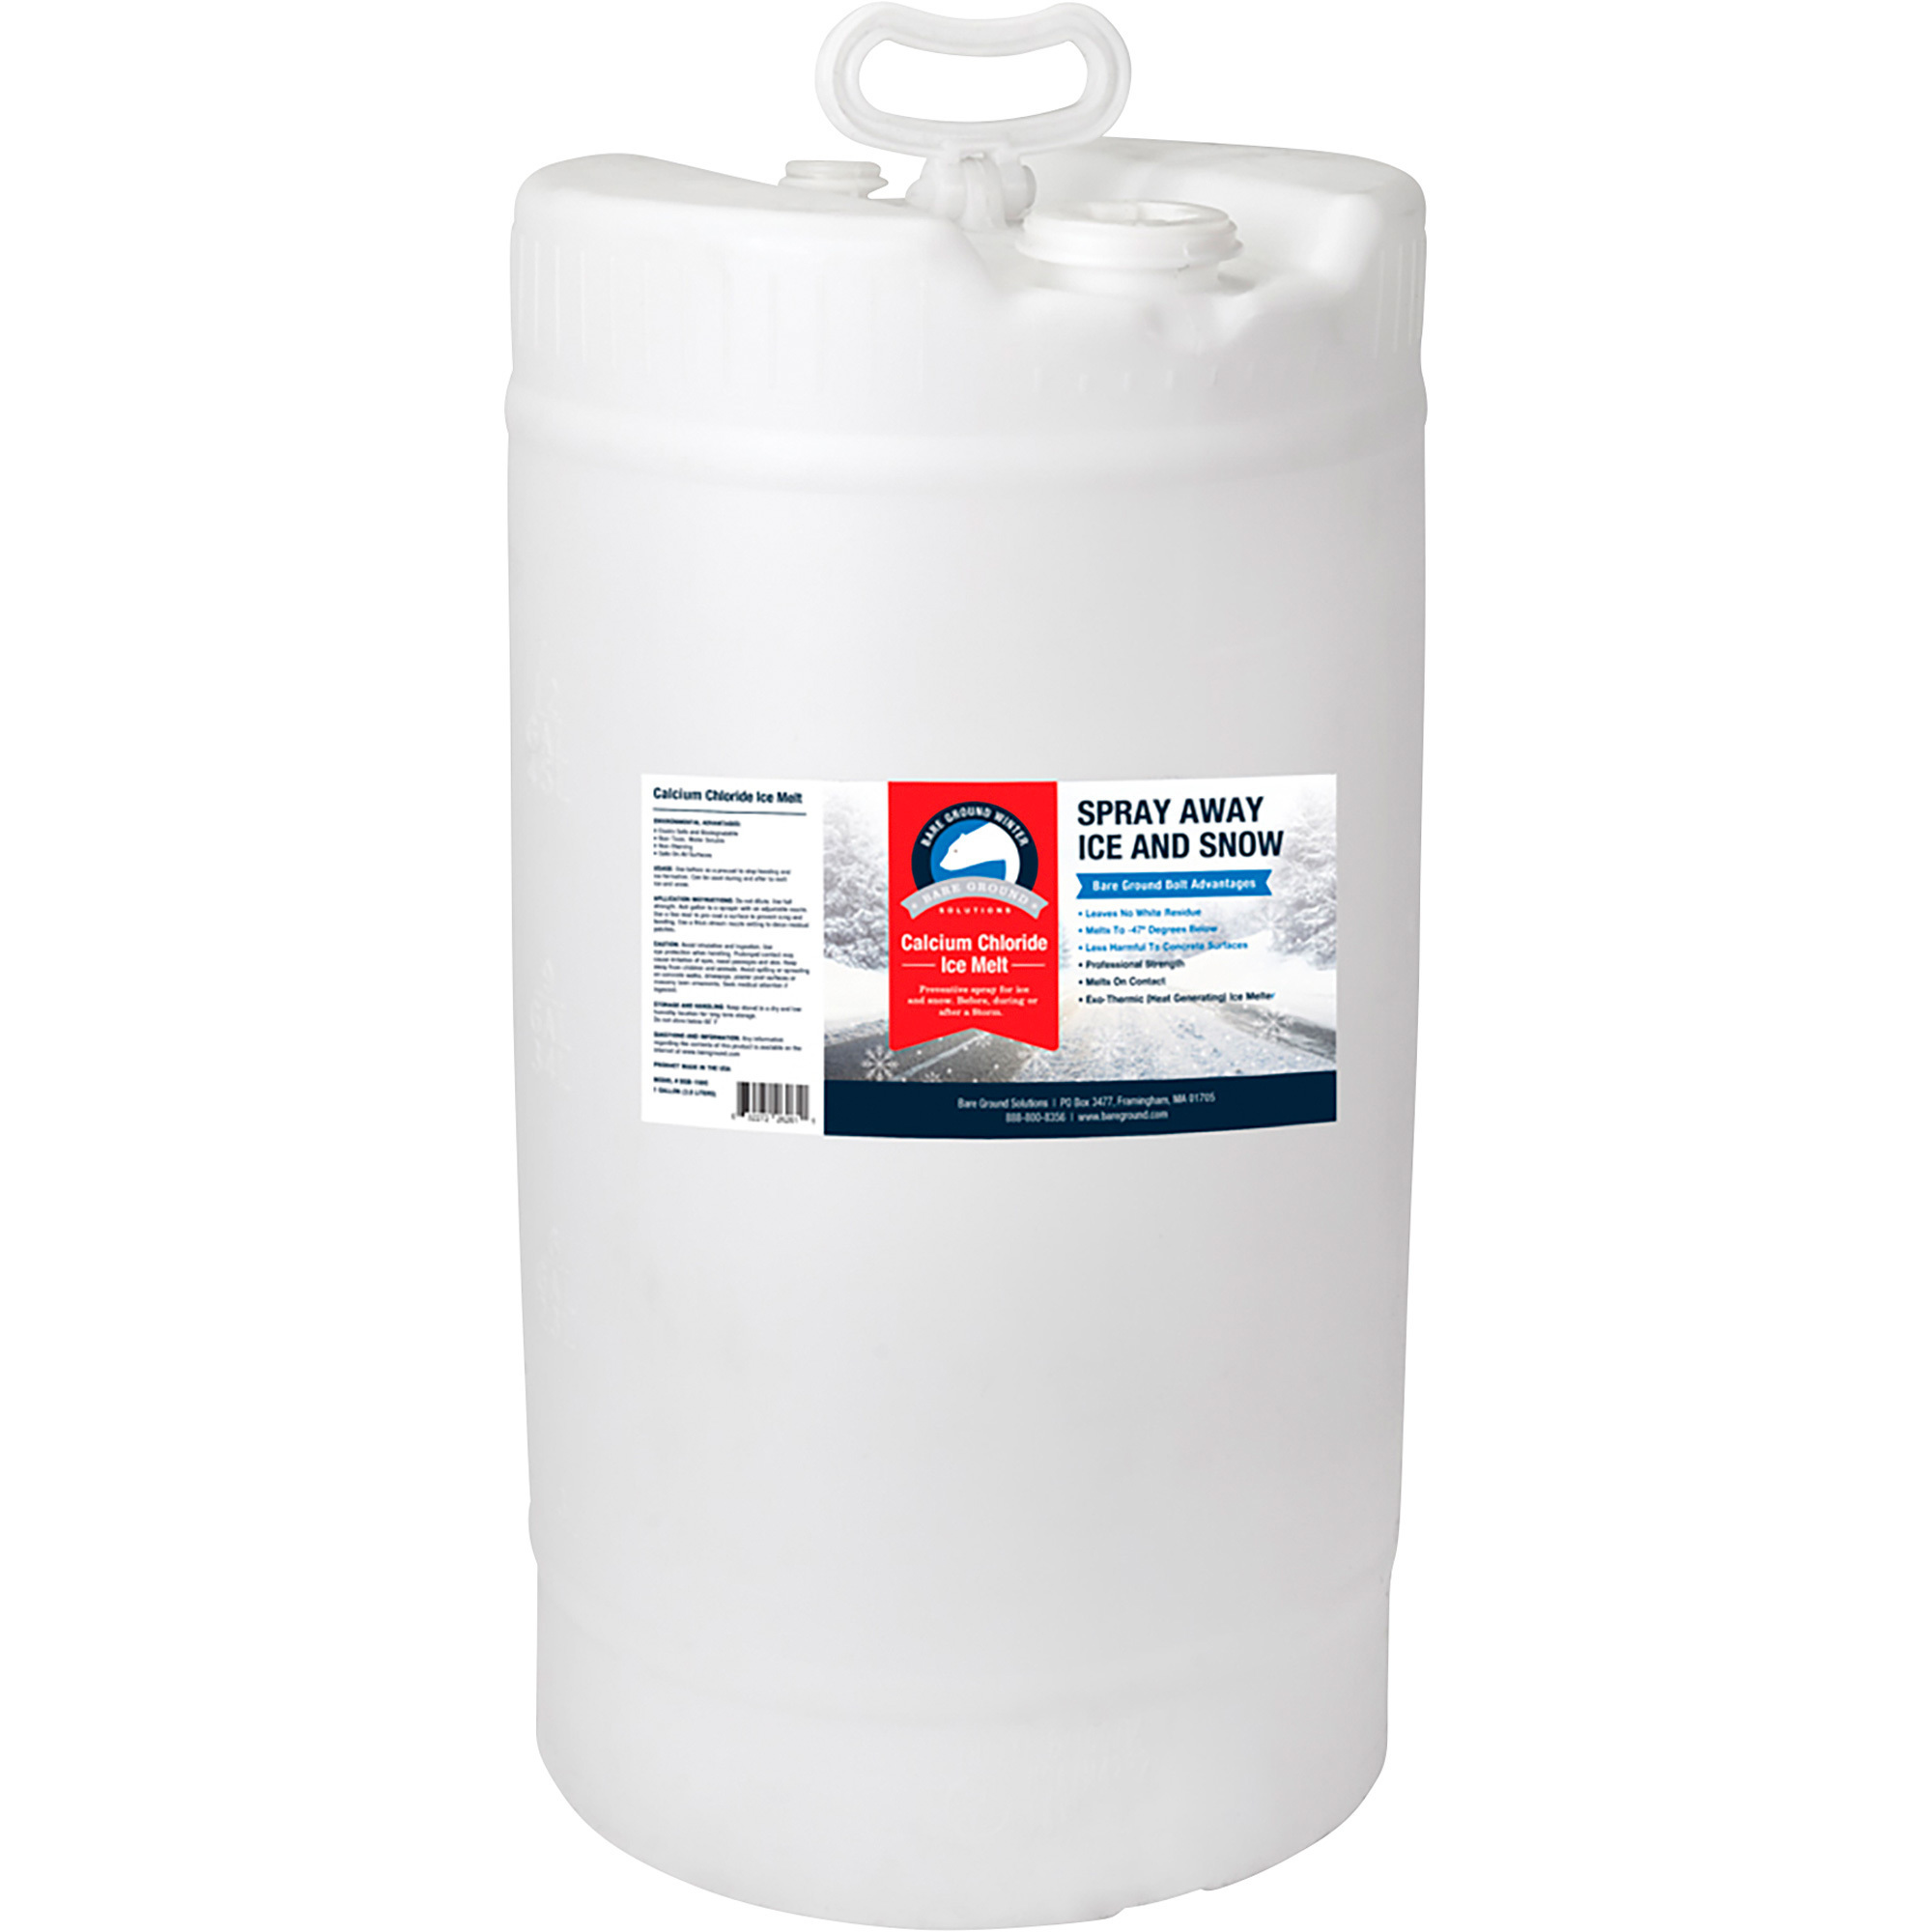 Bare Ground Winter Calcium Chloride Liquid Deicer,15-Gallon Drum, Model BGB-15DC